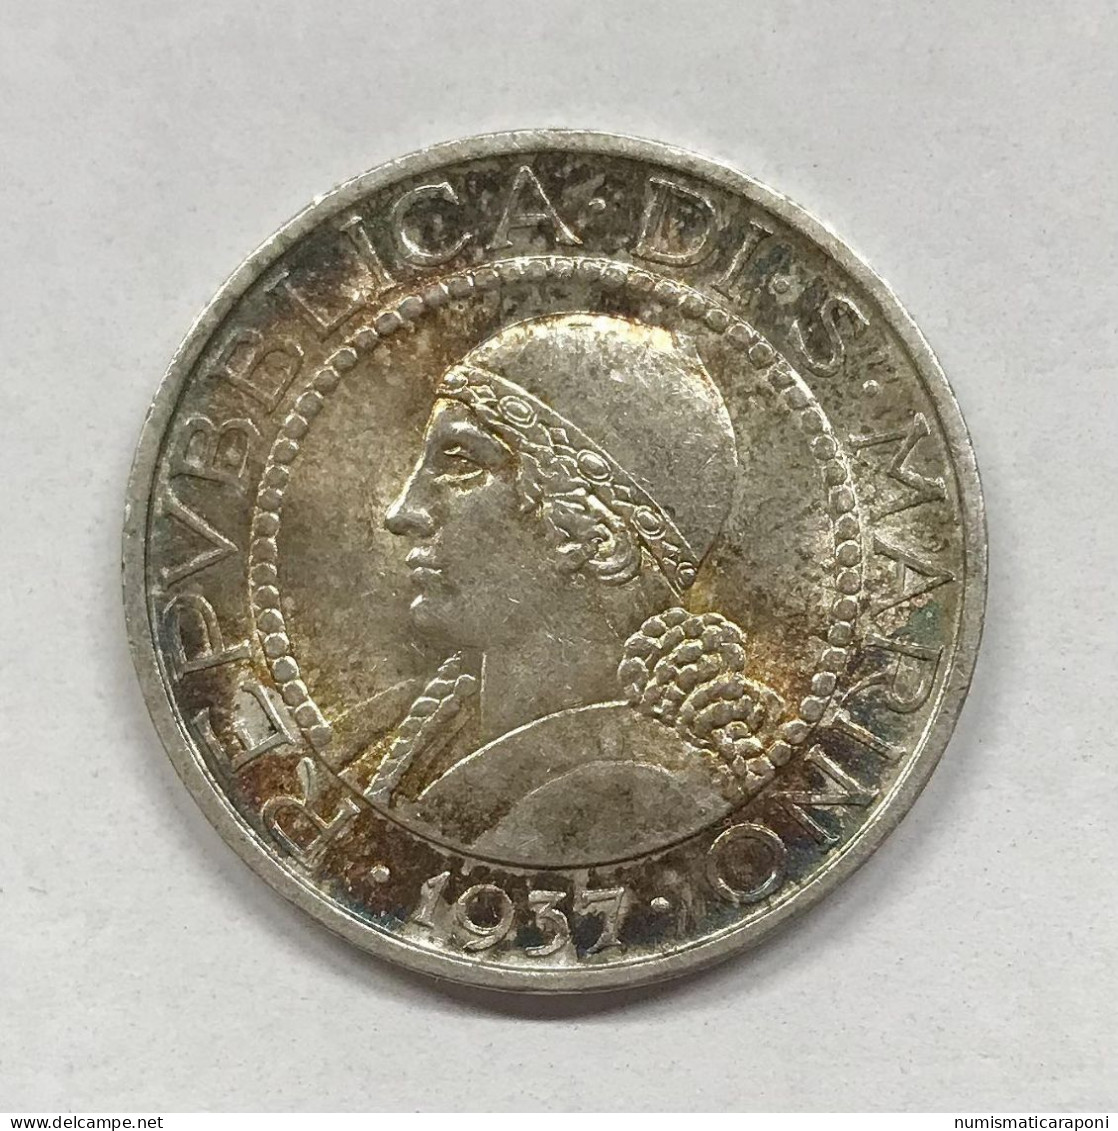 San Marino Vecchia Monetazione 1864-1938 5 Lire 1937 Gig.23 Fdc Bellissima Patina E.1306 - Saint-Marin